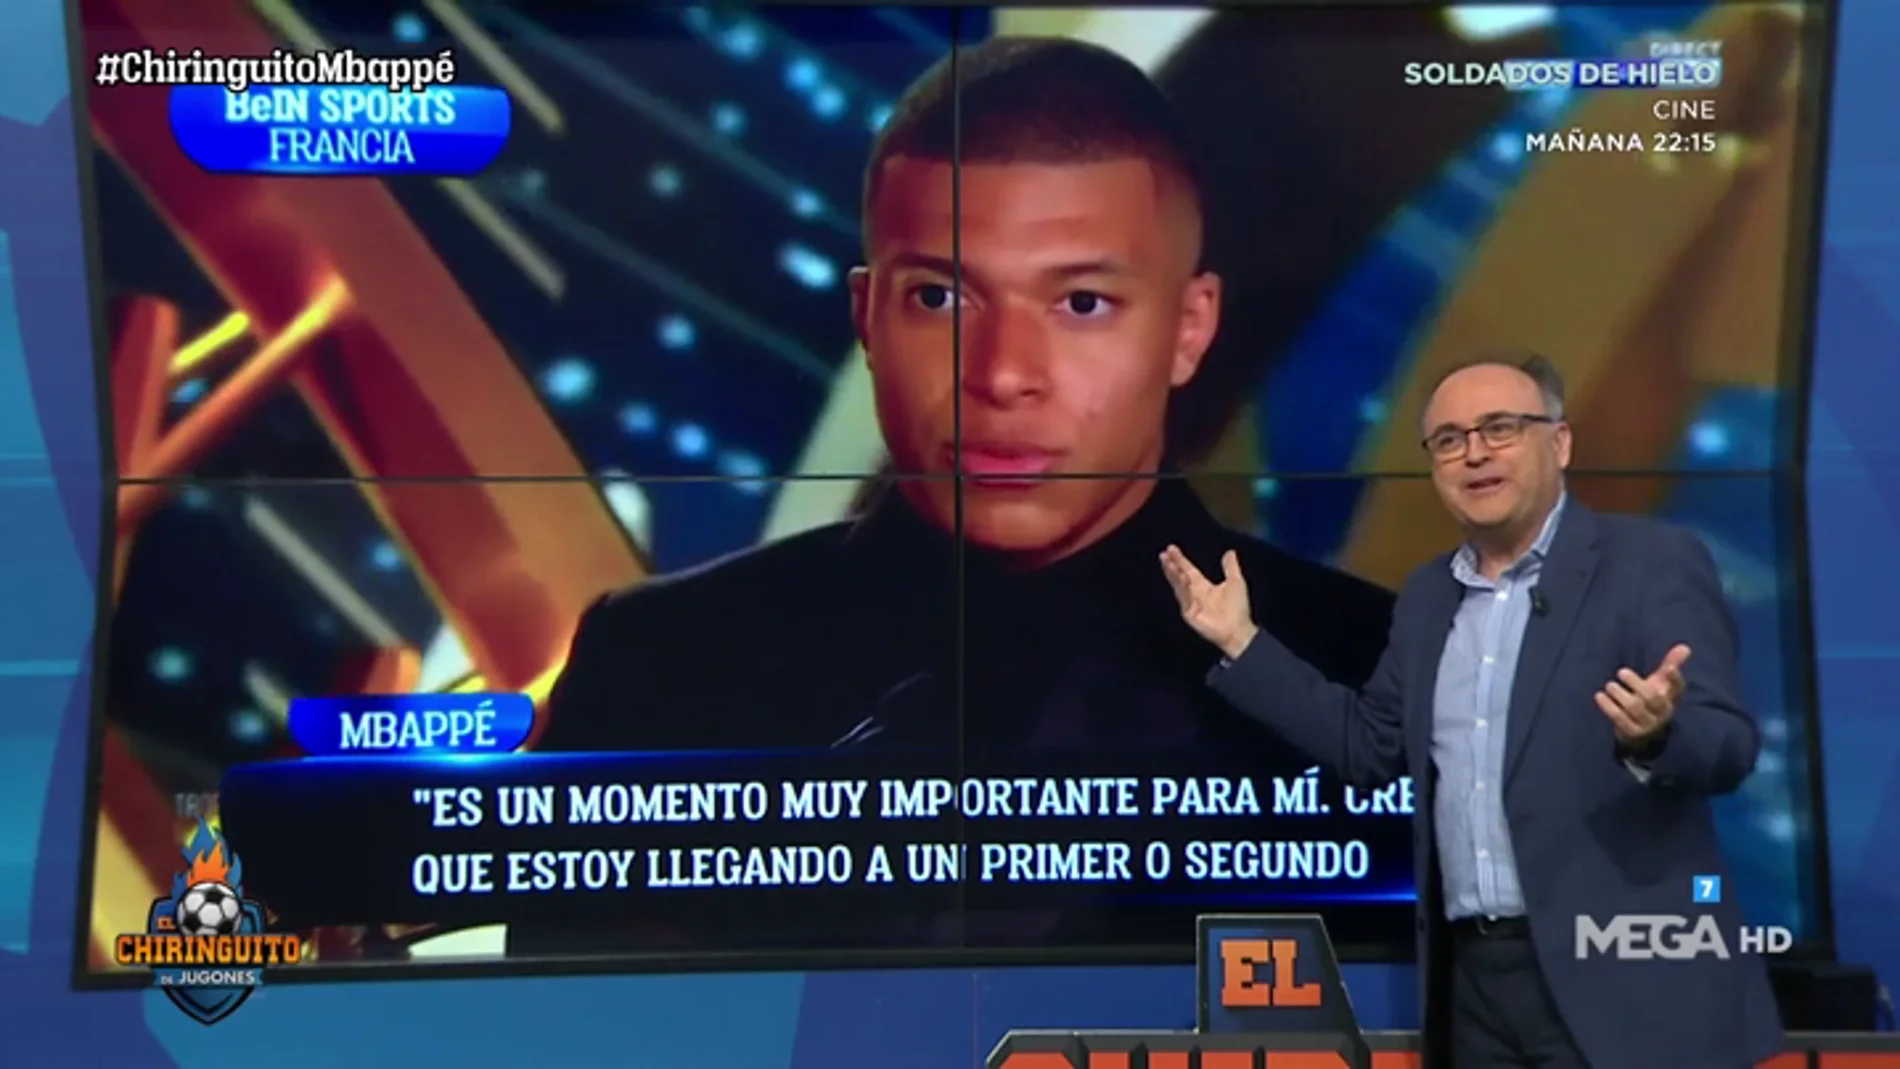 Martín Ovejero: "Mbappé baja la mirada al hablar del PSG y la levanta cuando piensa en otro proyecto"